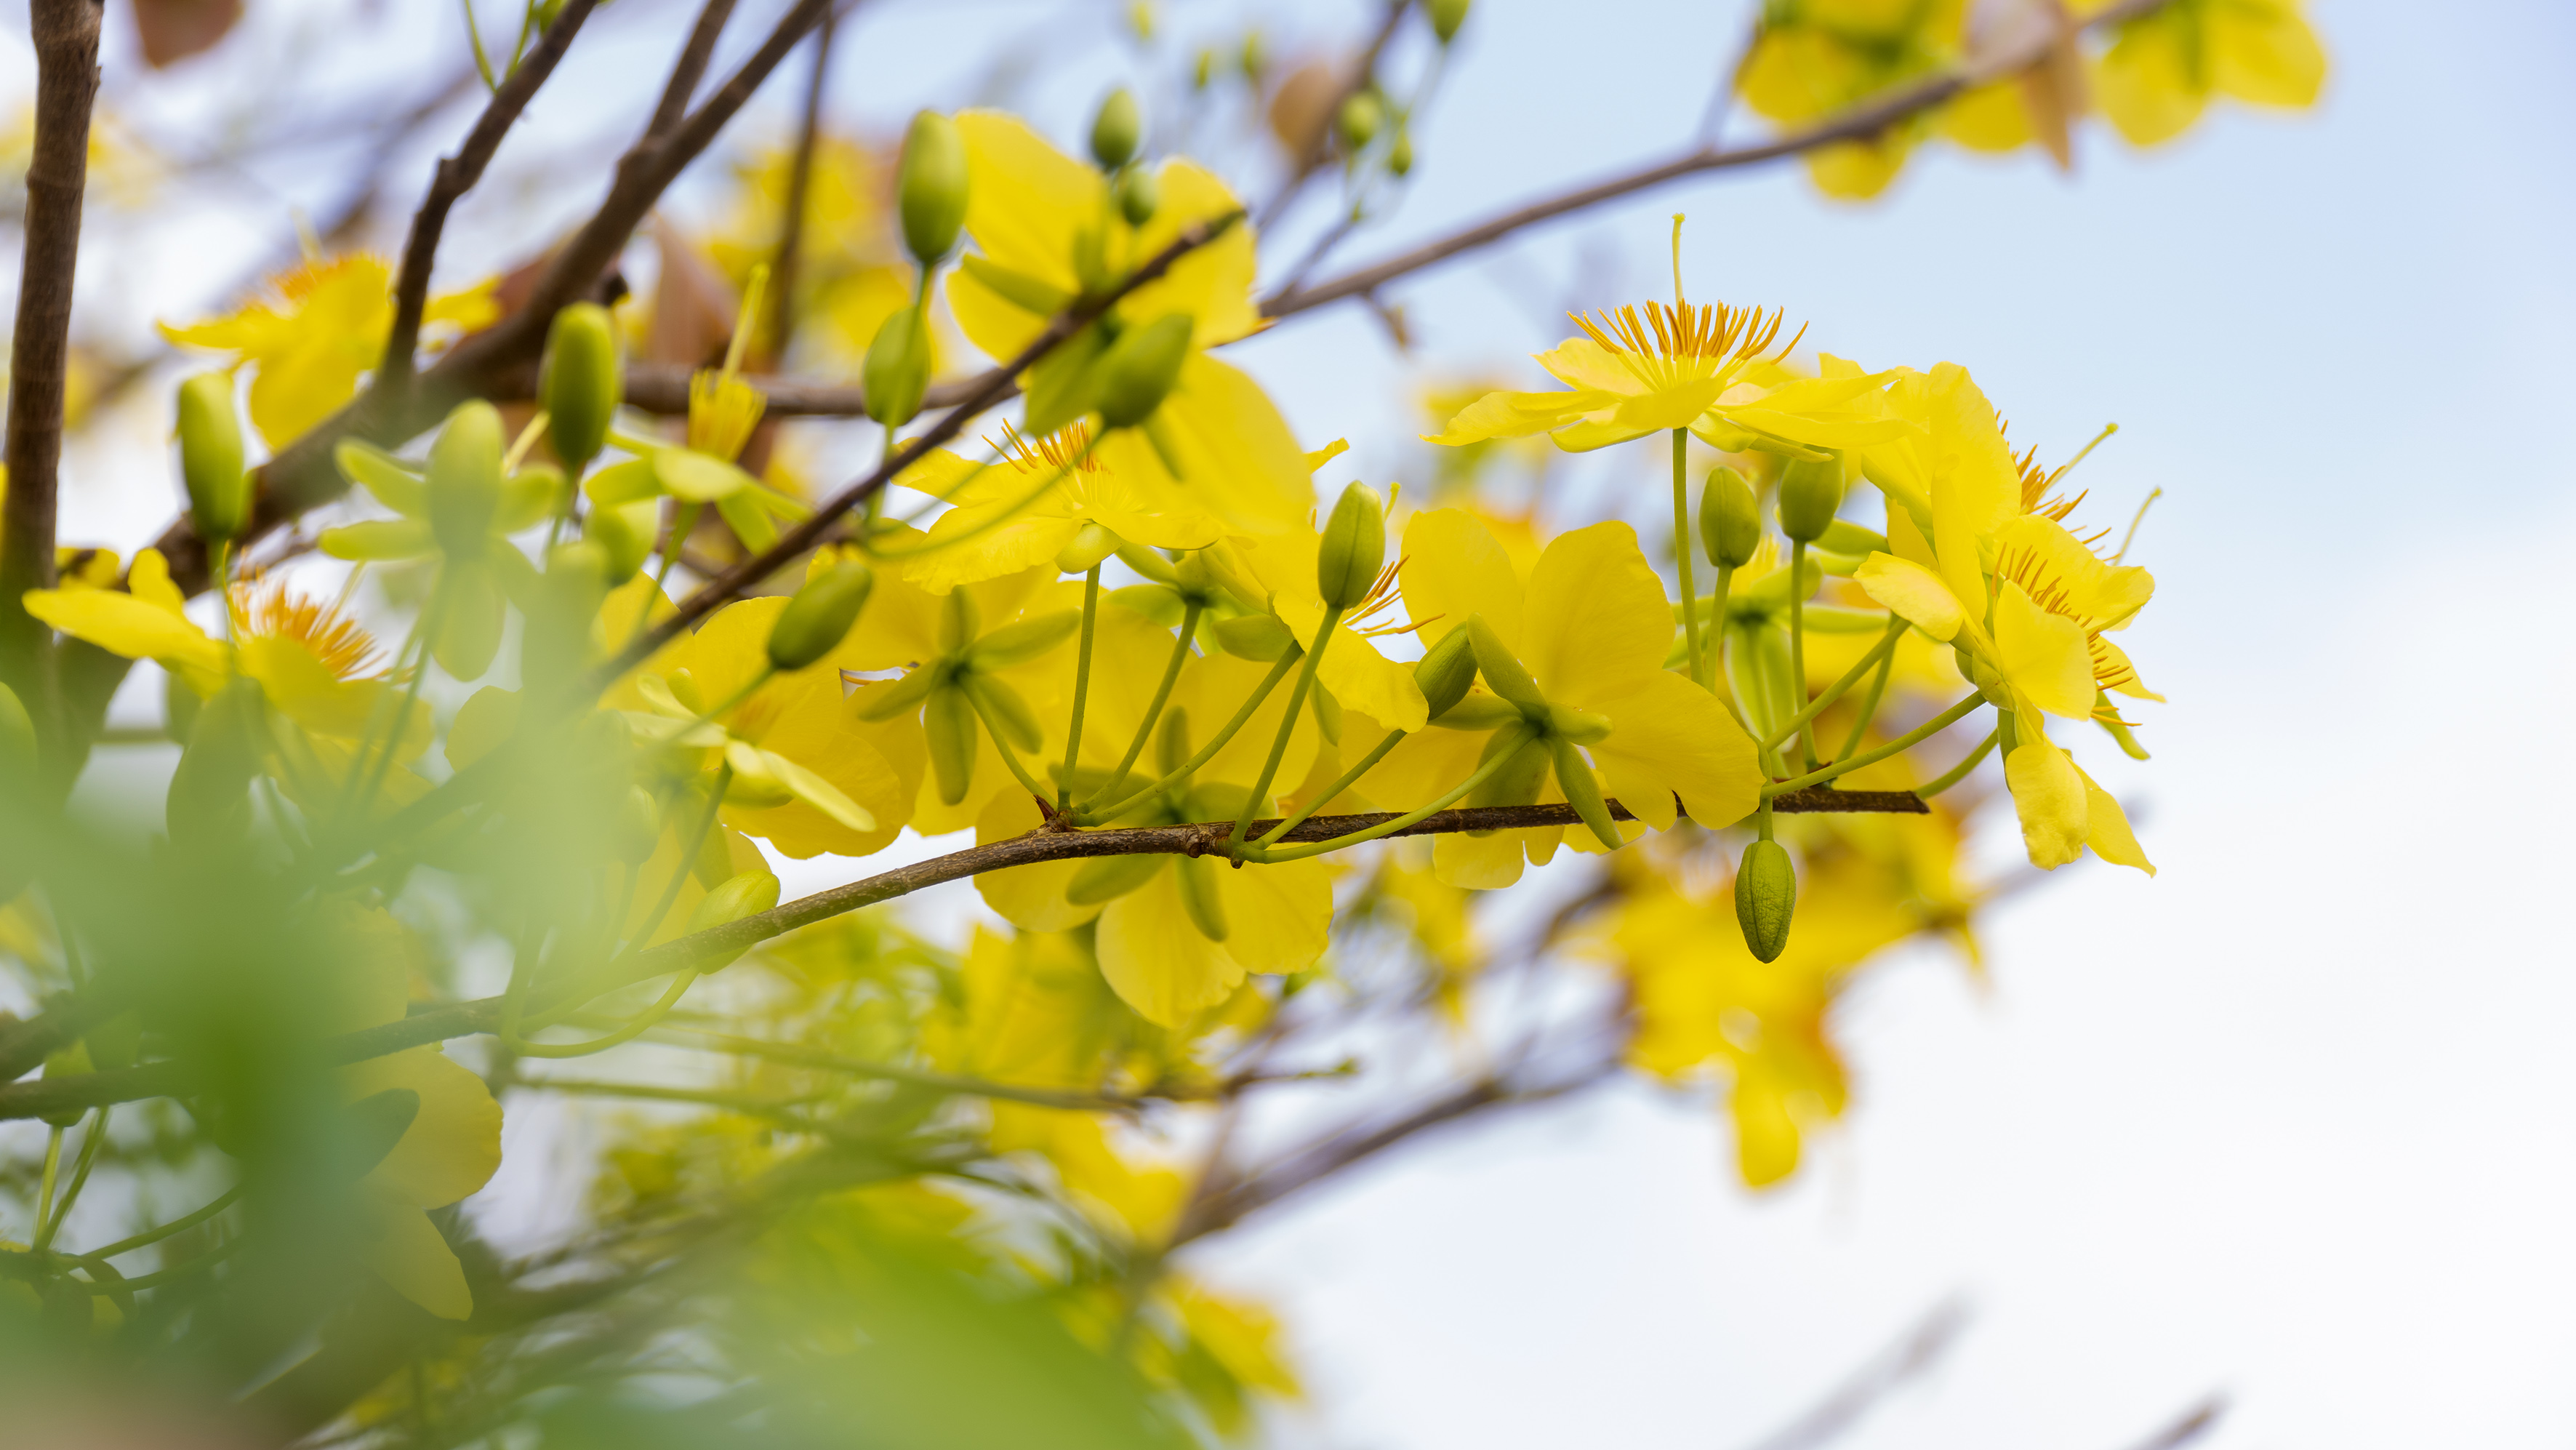 Ông Nguyễn Tấn Bản, Chủ tịch UBND huyện Châu Đức0 cho biết: Huyện chọn cây mai là cây biểu tượng để quảng bá hình ảnh của huyện Châu Đức cũng như mong muốn đem lại những niềm vui, những điều may mắn cho người dân khi Tết đến Xuân về. 